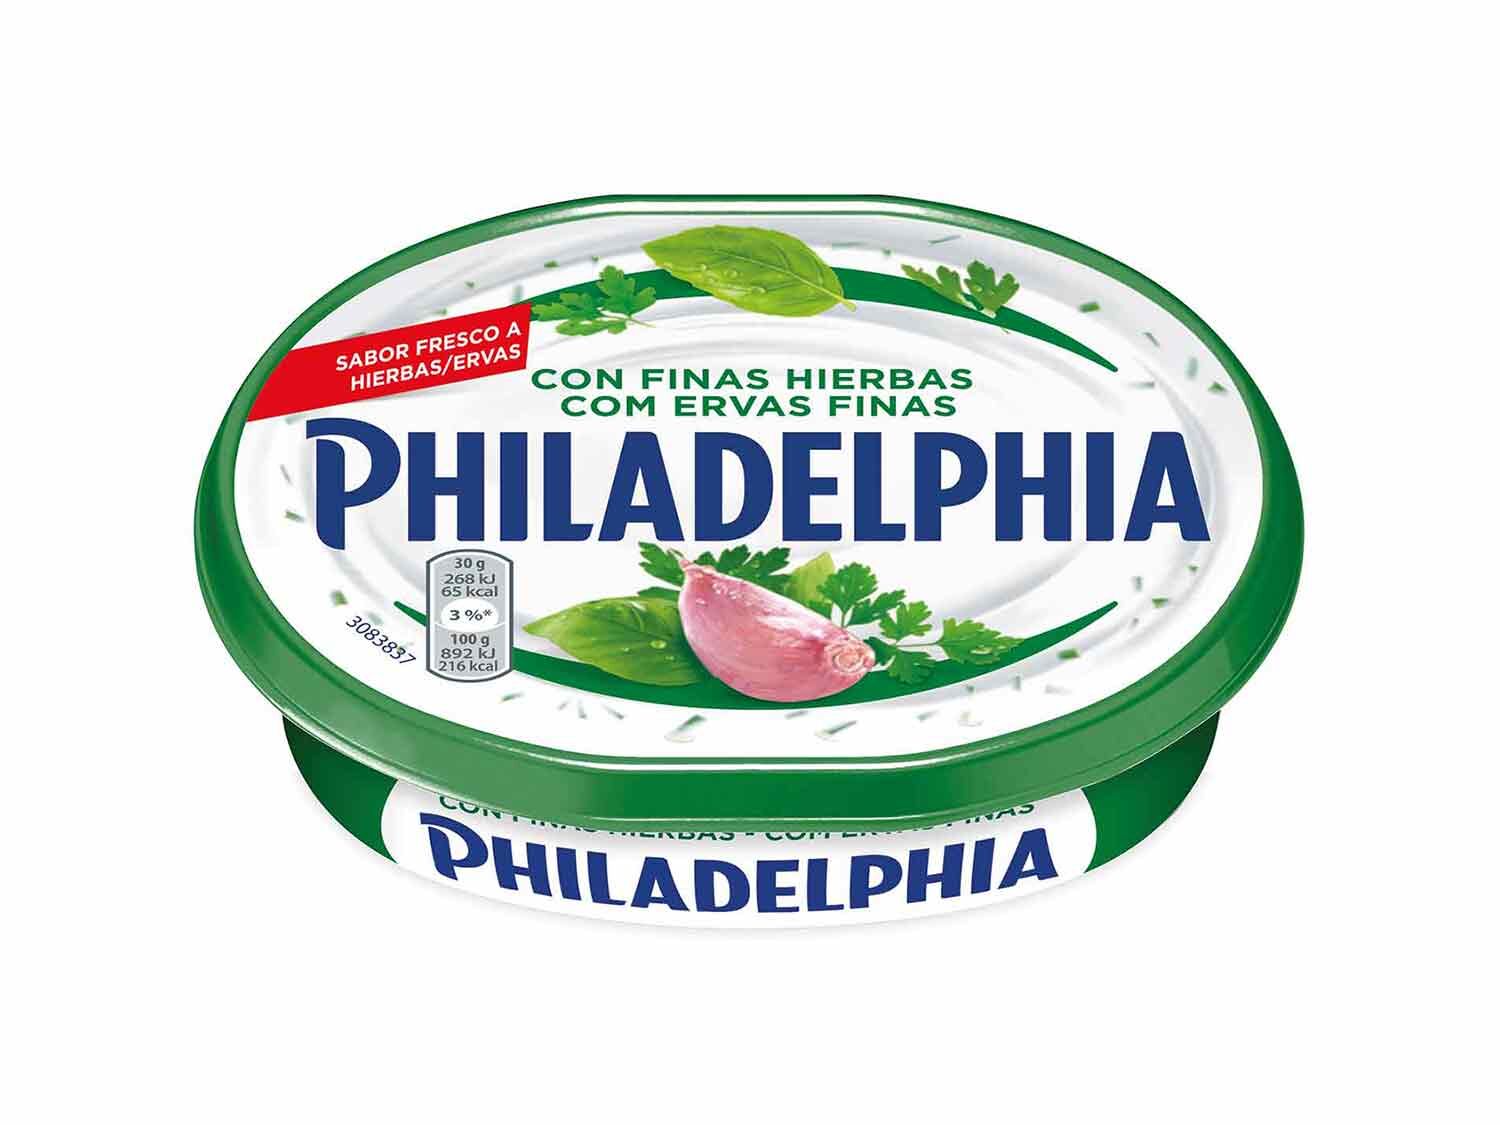 Philadelphia lidl